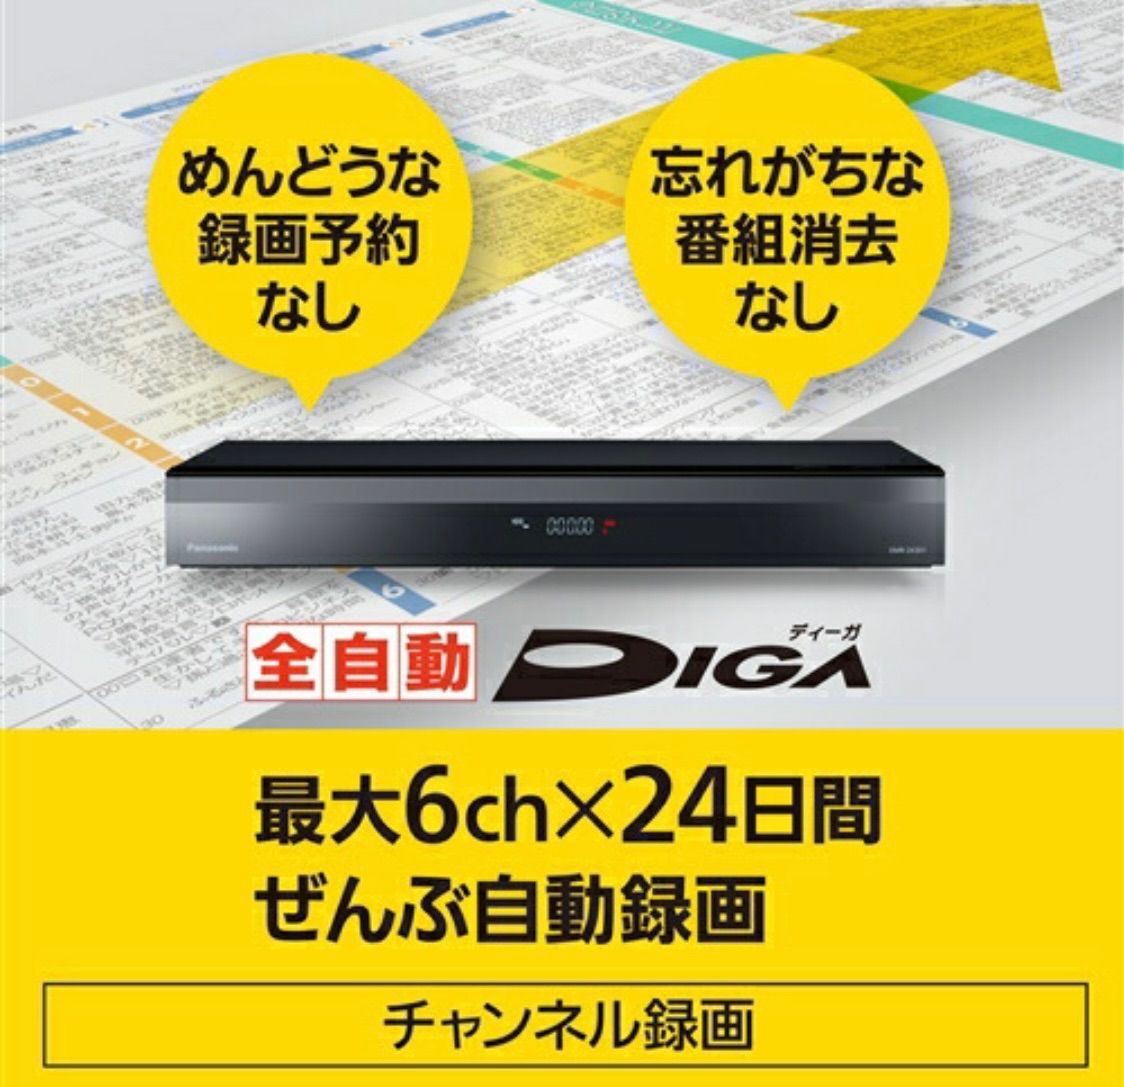 【新品】Panasonic ブルーレイレコーダー DMR-2X301 DIGA